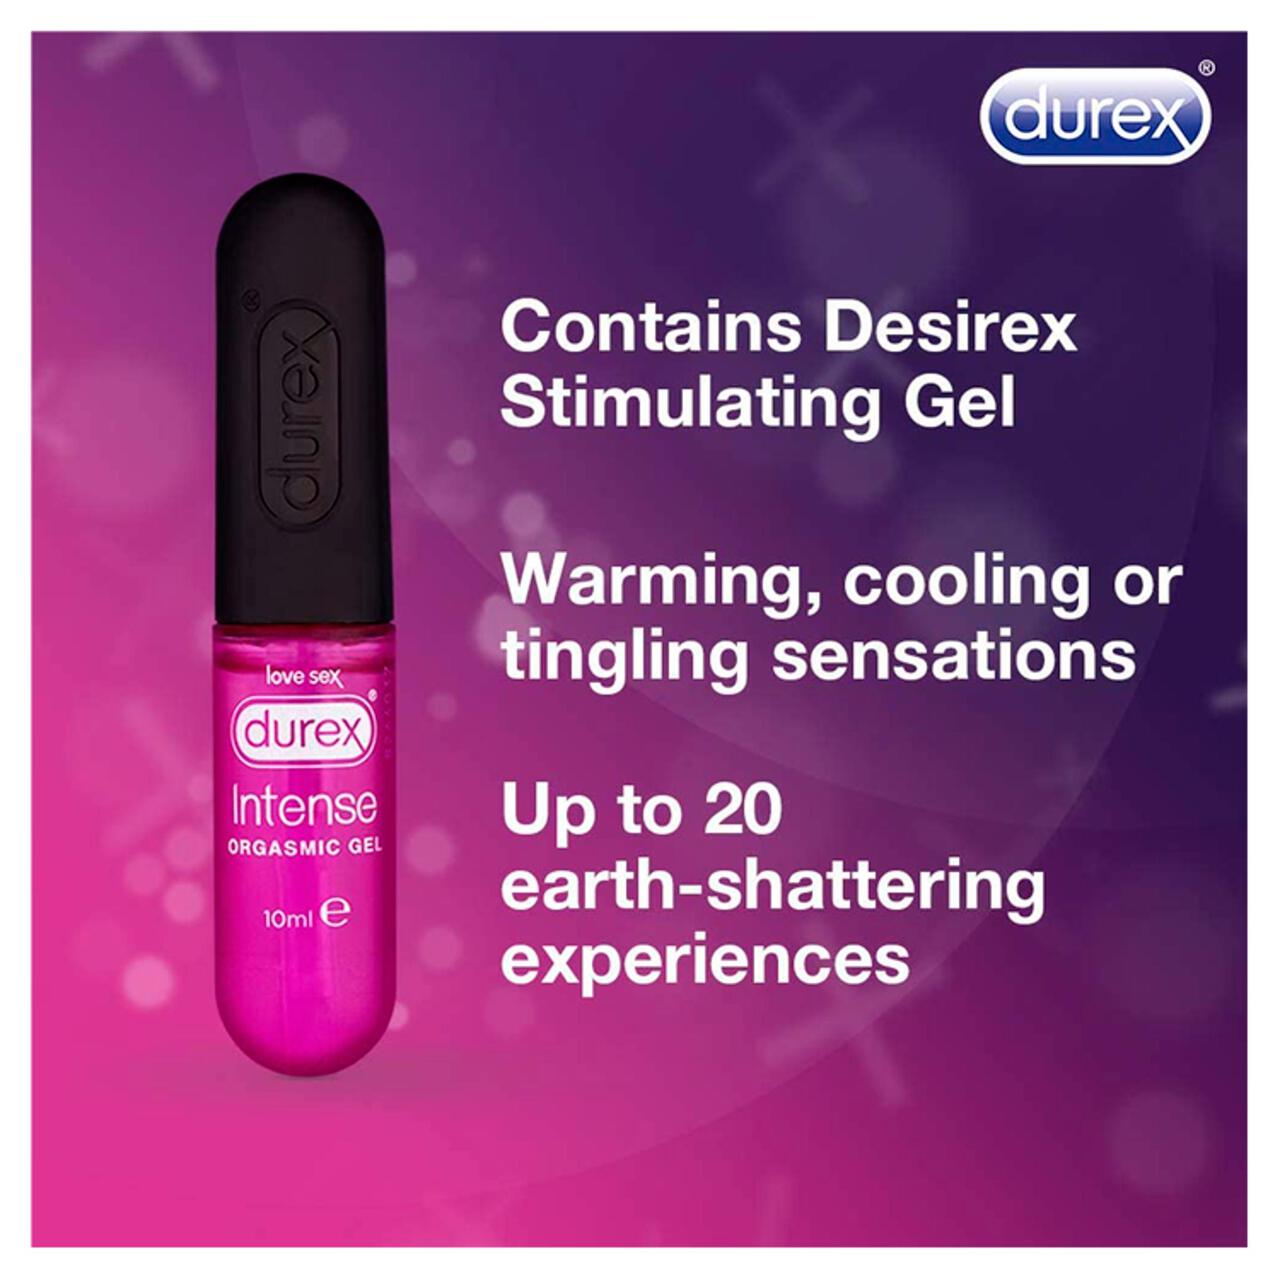 Durex Intense Orgasmic Gel 10ml 10ml